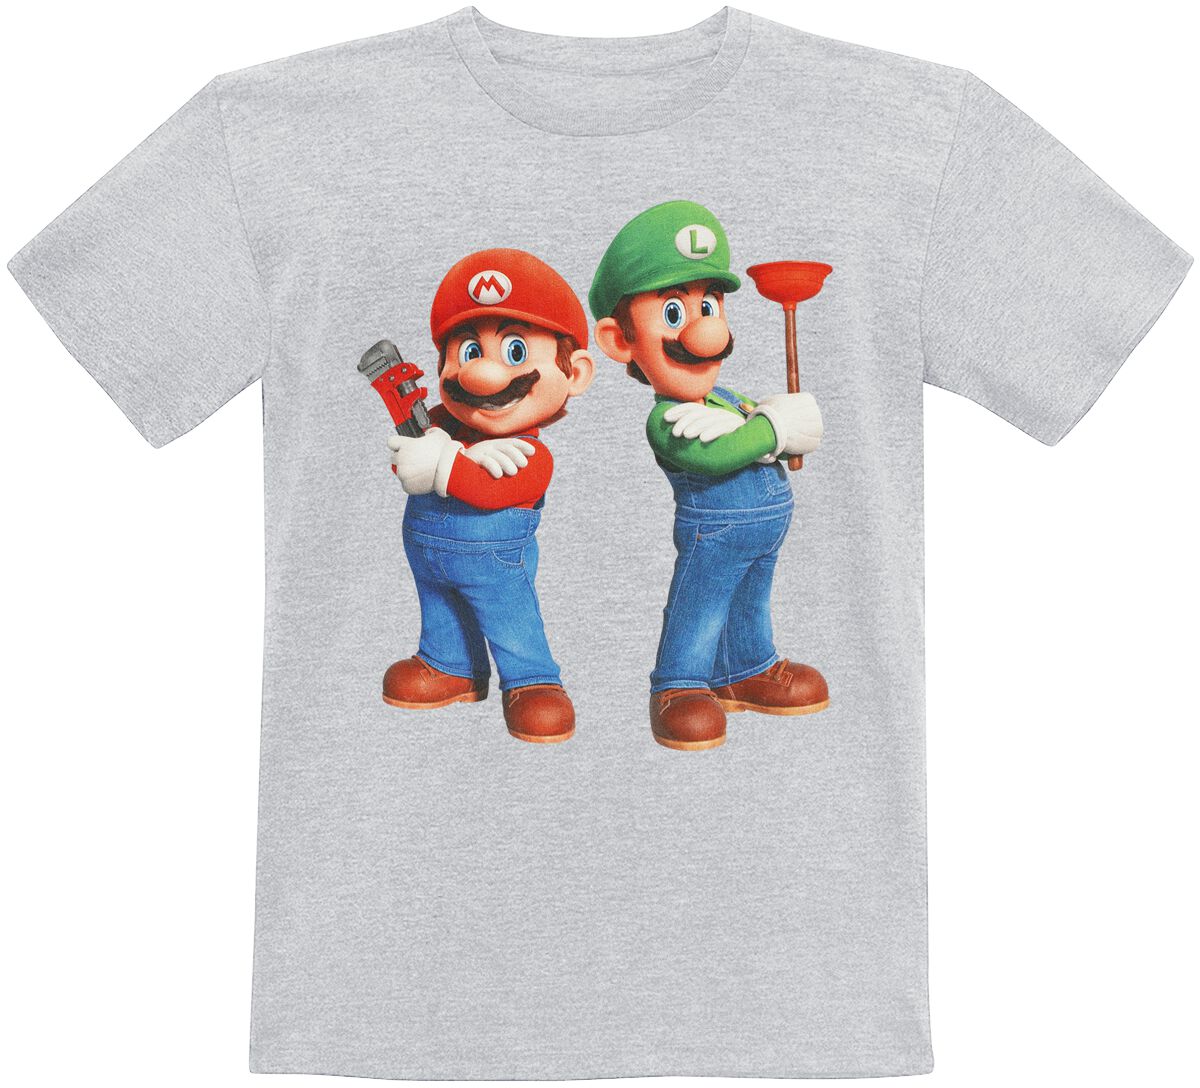 Super Mario - Gaming T-Shirt für Kinder - Kids - Plumbing Bros. - für Mädchen & Jungen - grau